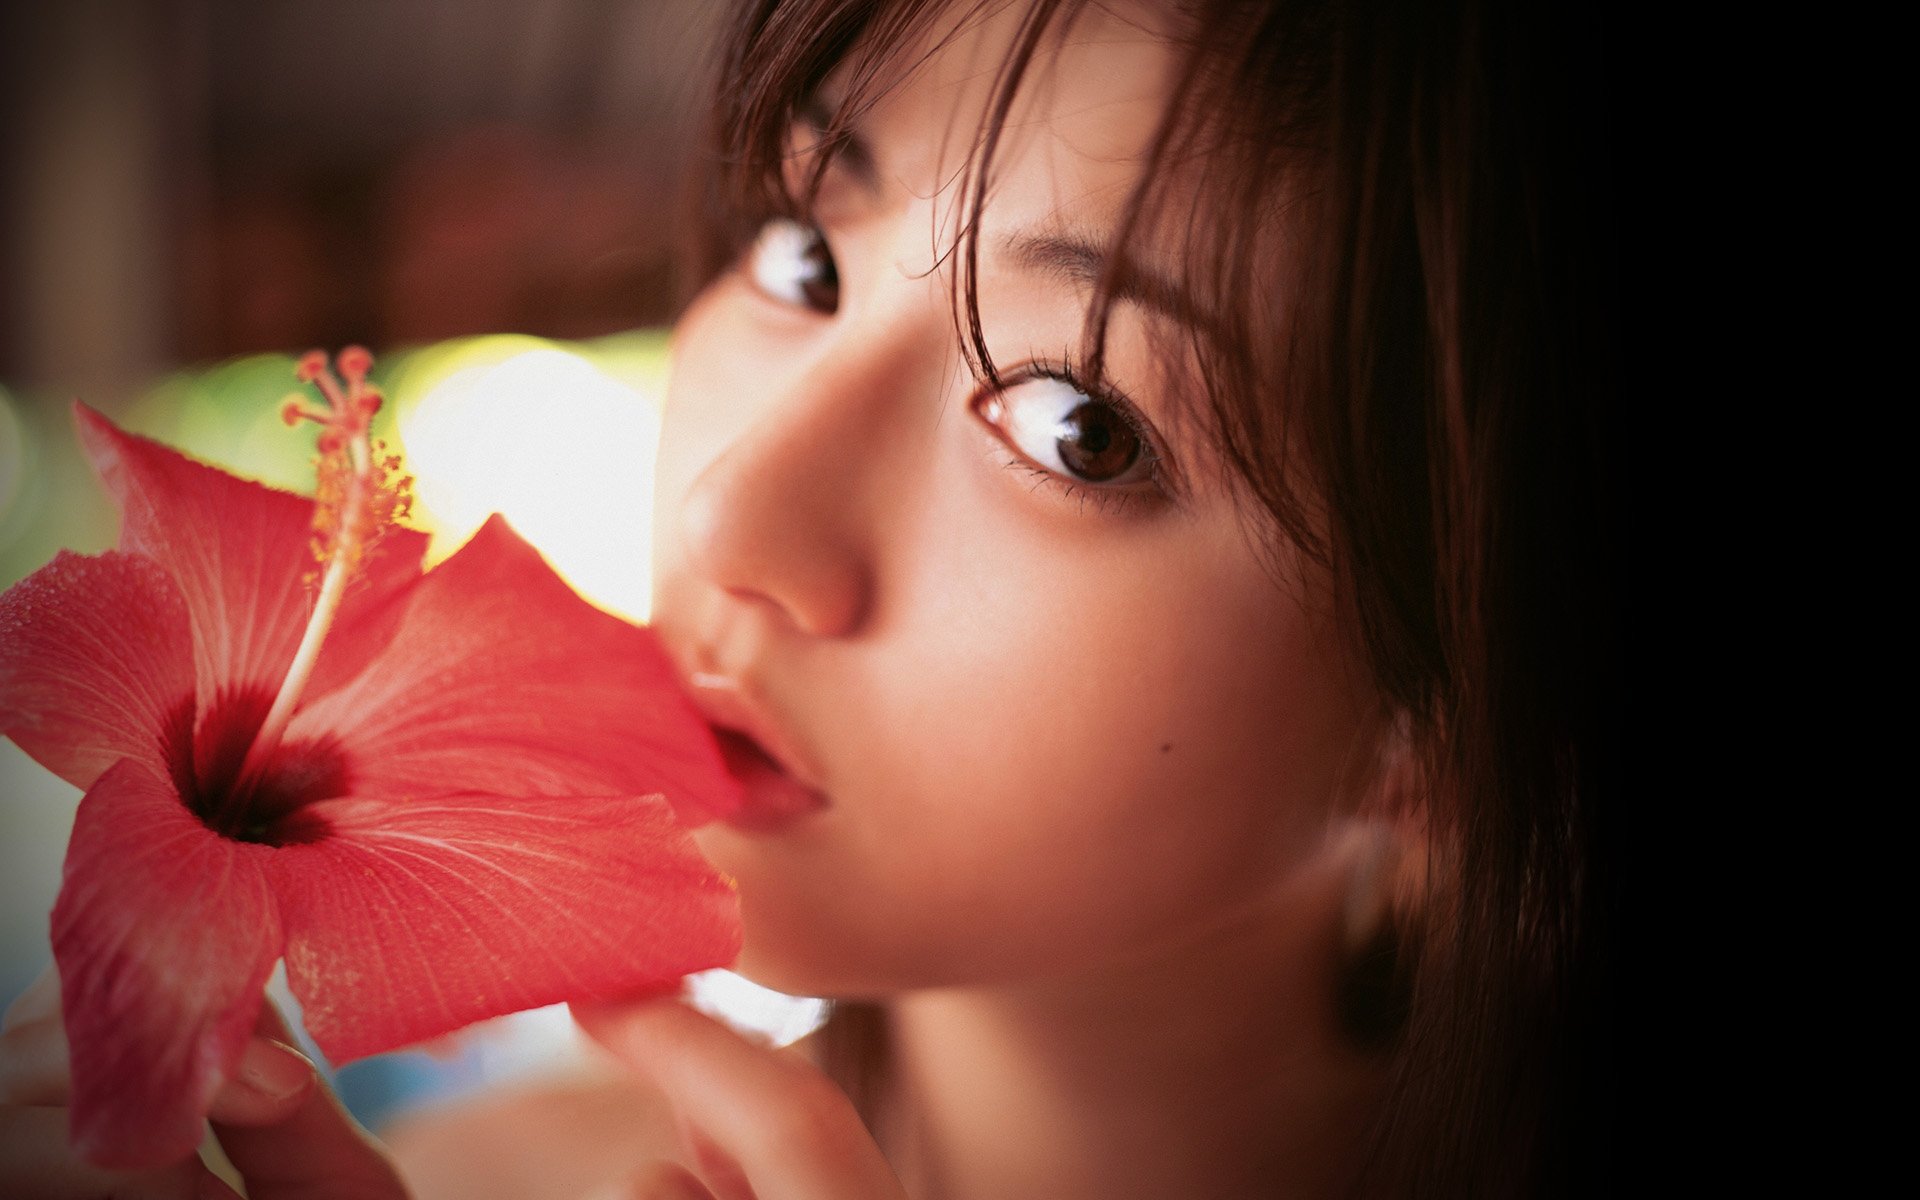 Yumi Sugimoto Japanese Model Actress Gravure Idol Singer 1yumi Pop J Pop Jpop Babe